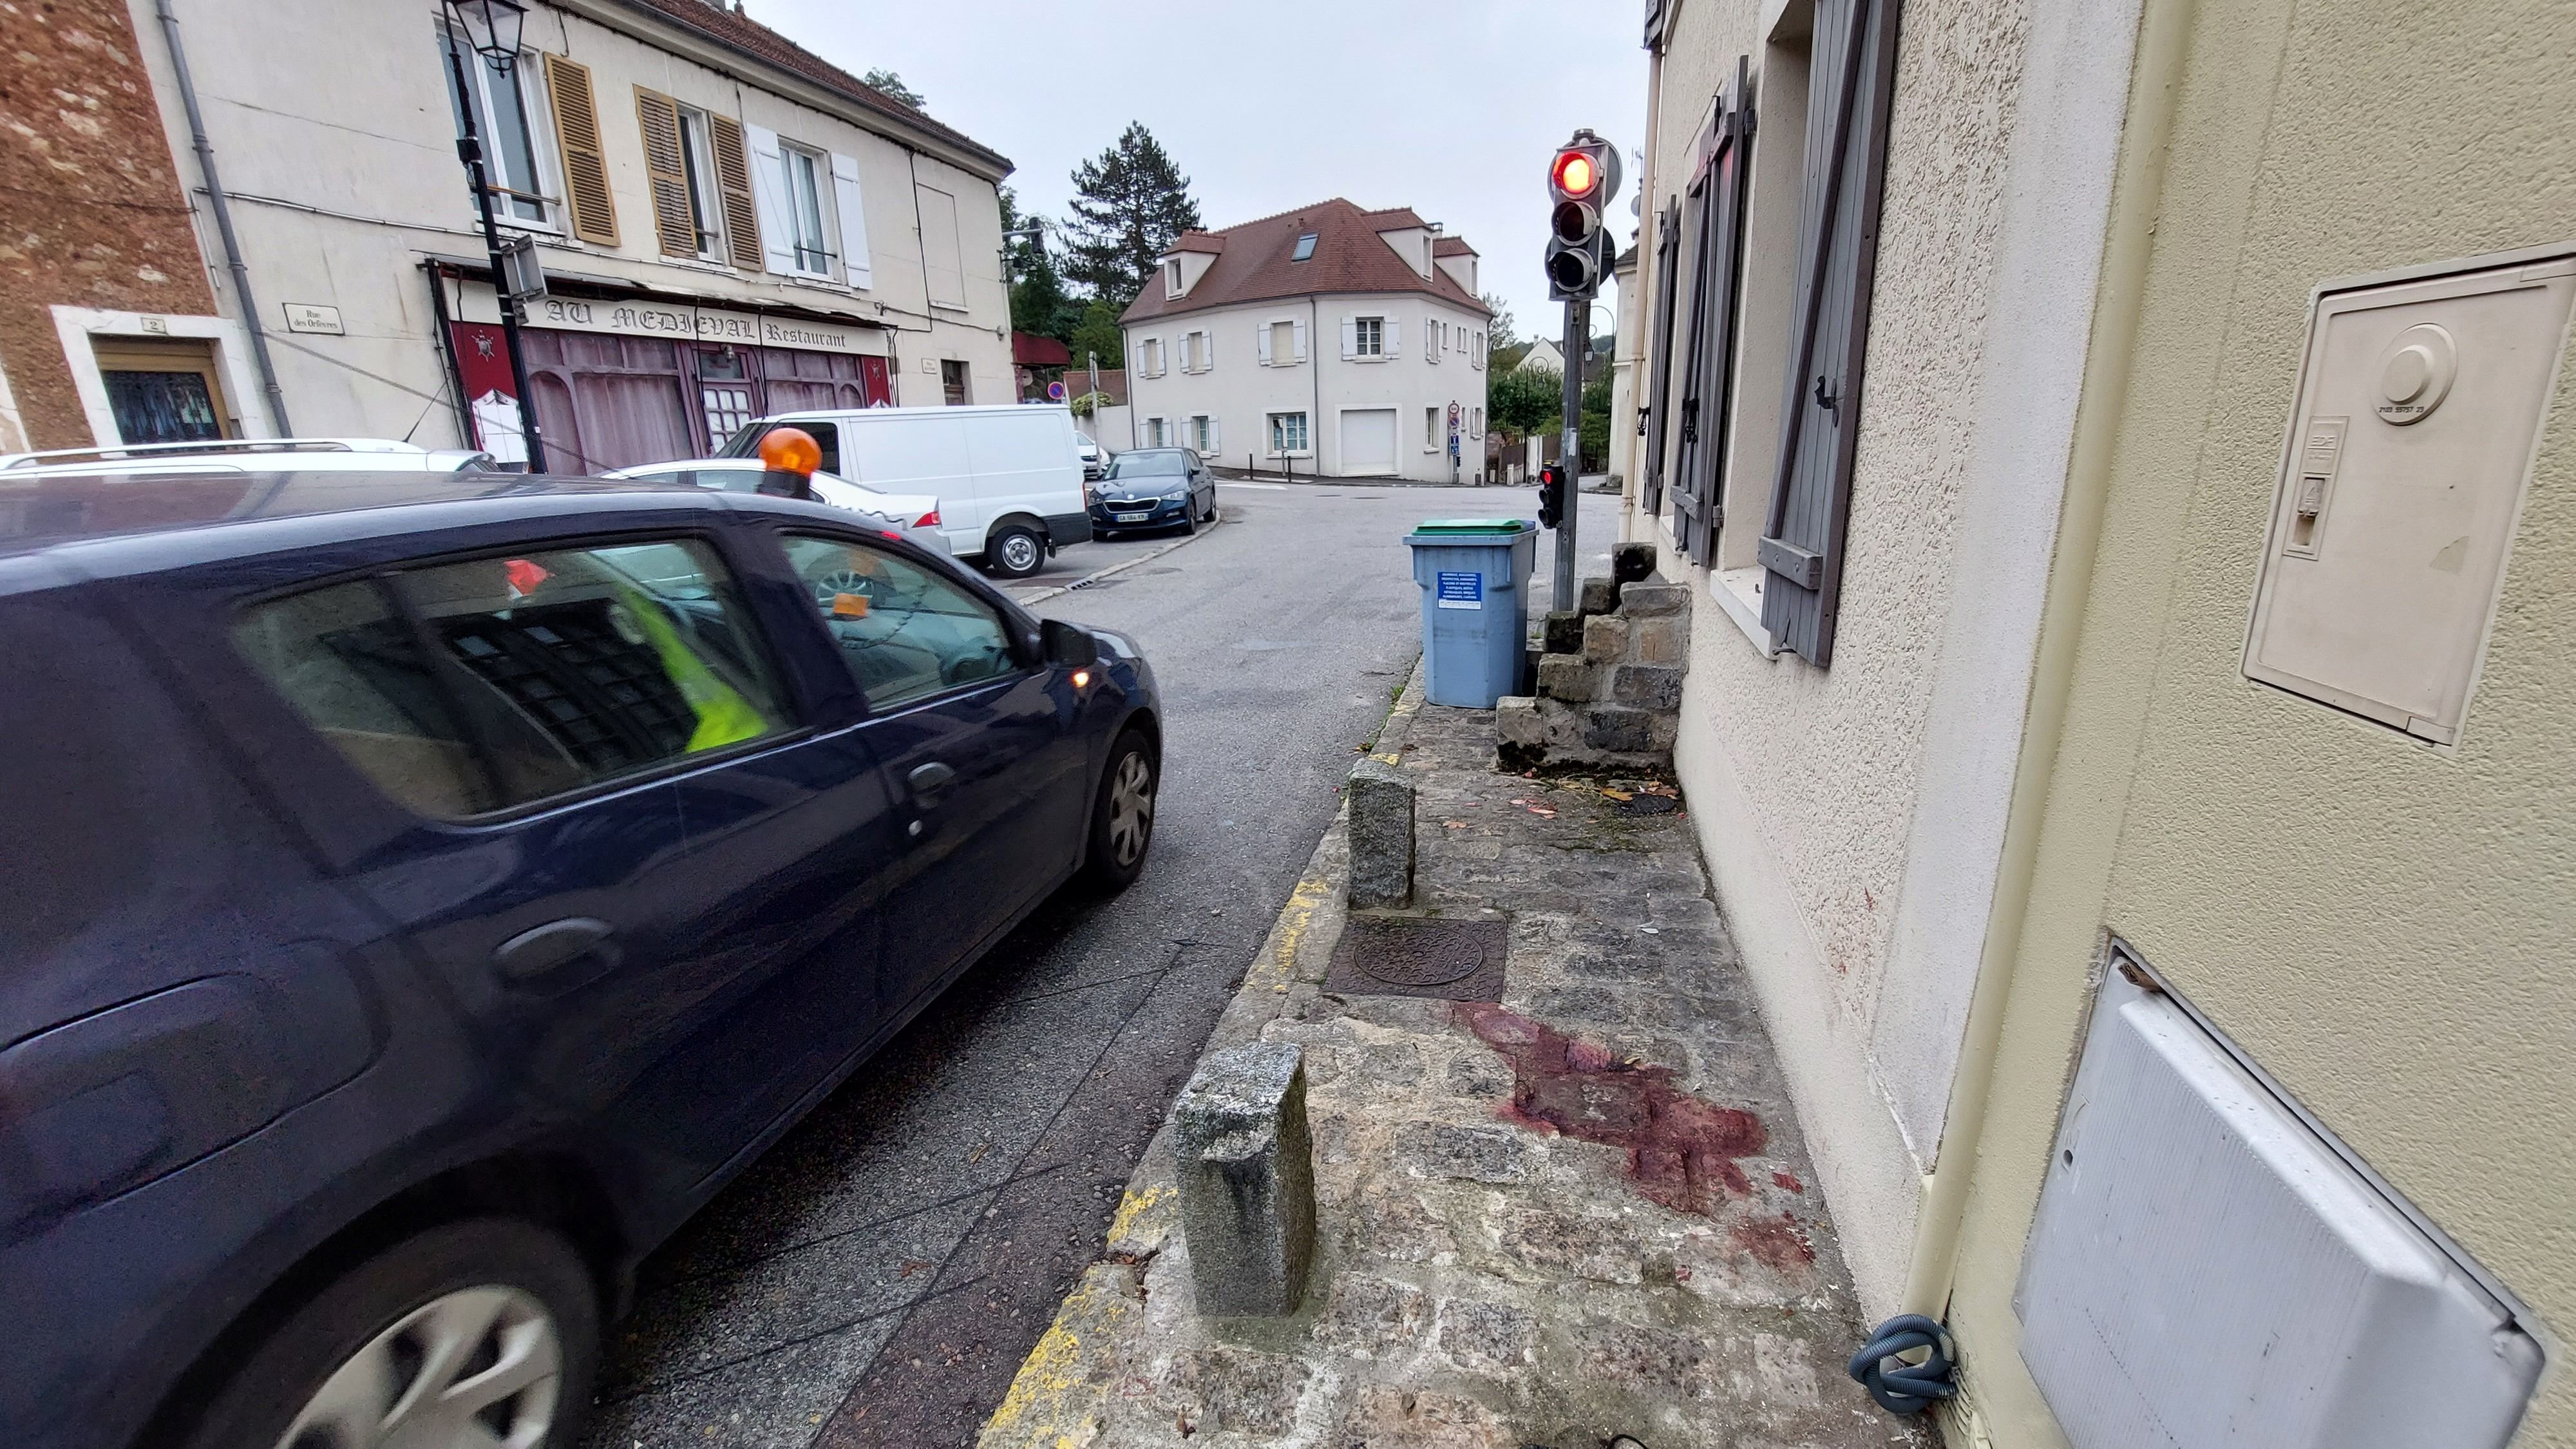 Châteaufort (Yvelines), ce lundi 23 octobre. Touché par un tir de police, le conducteur de la voiture volée a perdu beaucoup de sang. transporté en urgence à l’hôpital Percy de Clamart (Hauts-de-Seine) et opéré, ses jours ne sont plus en danger.